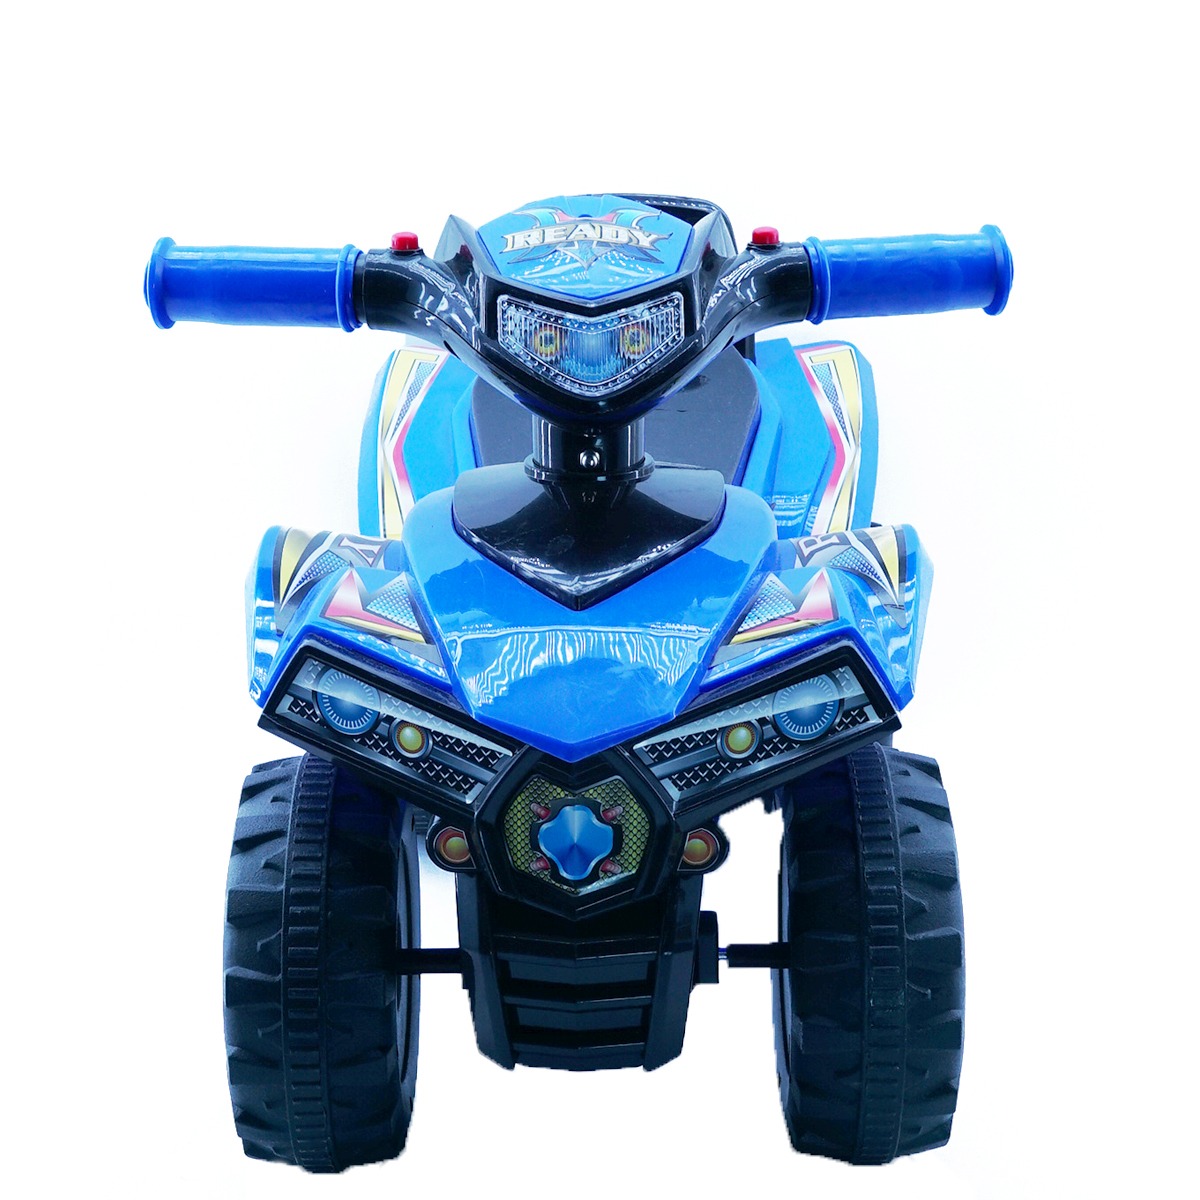 Montable Moto Correpasillos para niños 4 colores (Color Azul) Baby Baby  CENMOTOTIC-Azul